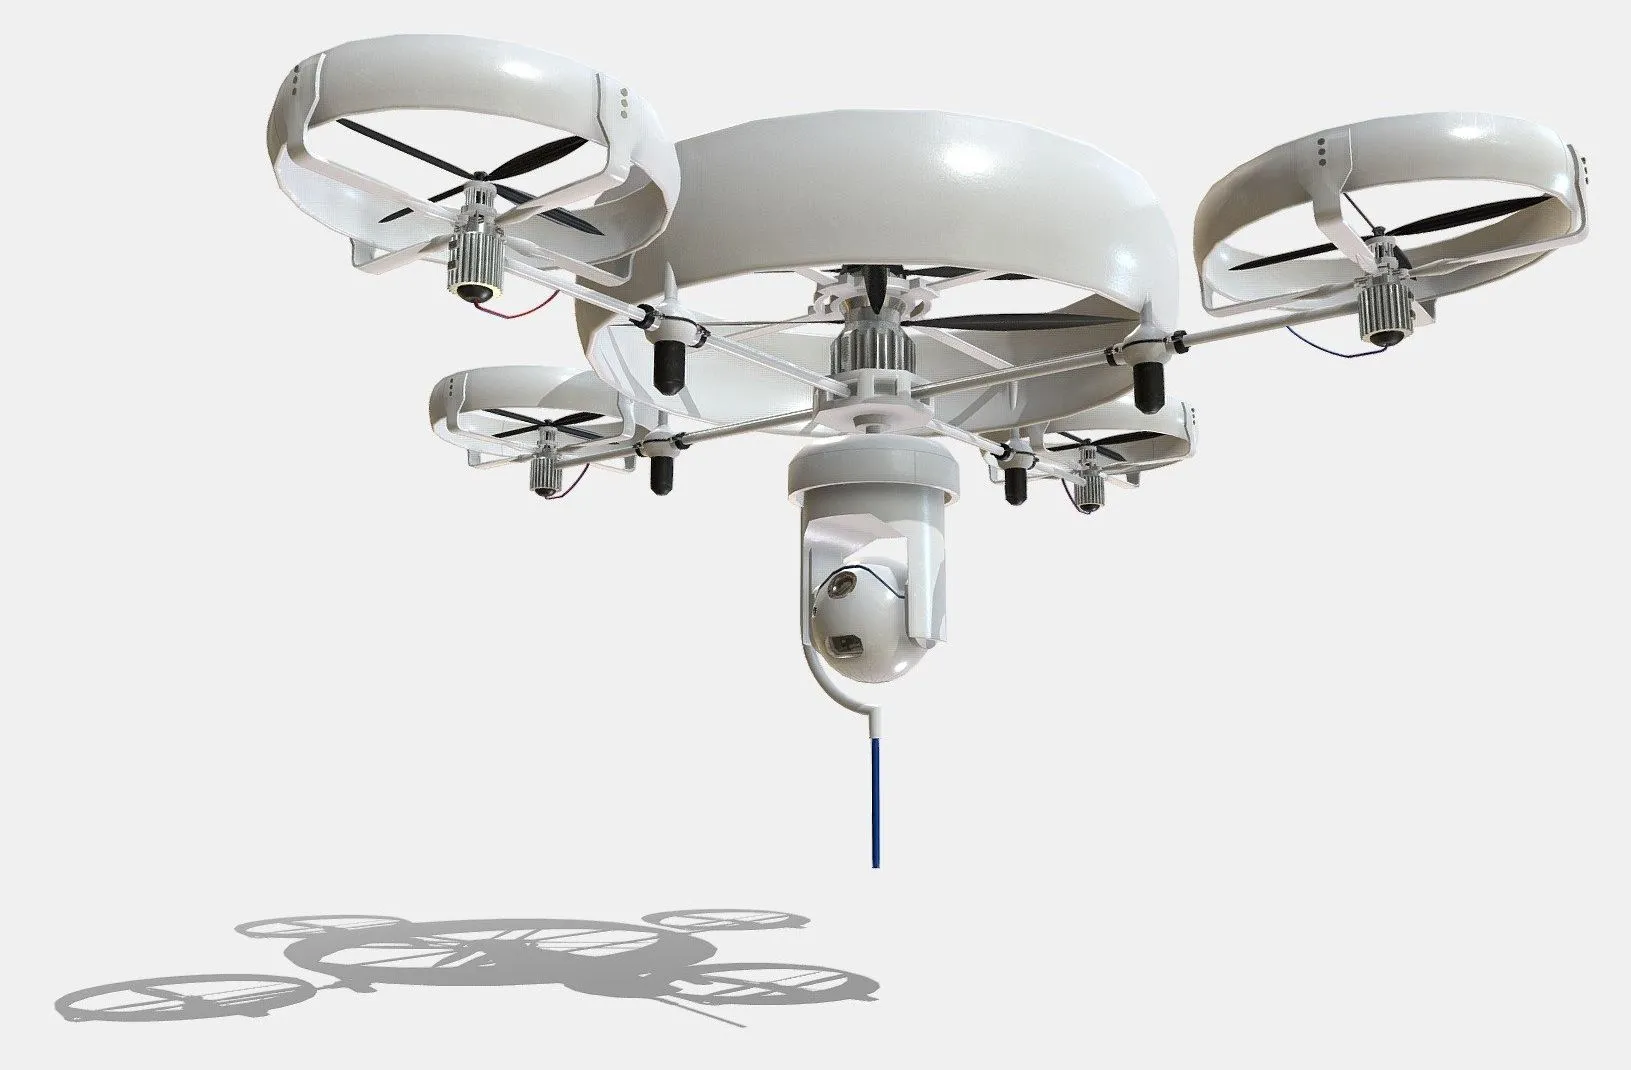 PBR Game 3D Model – Reconnaissance Spy Drone